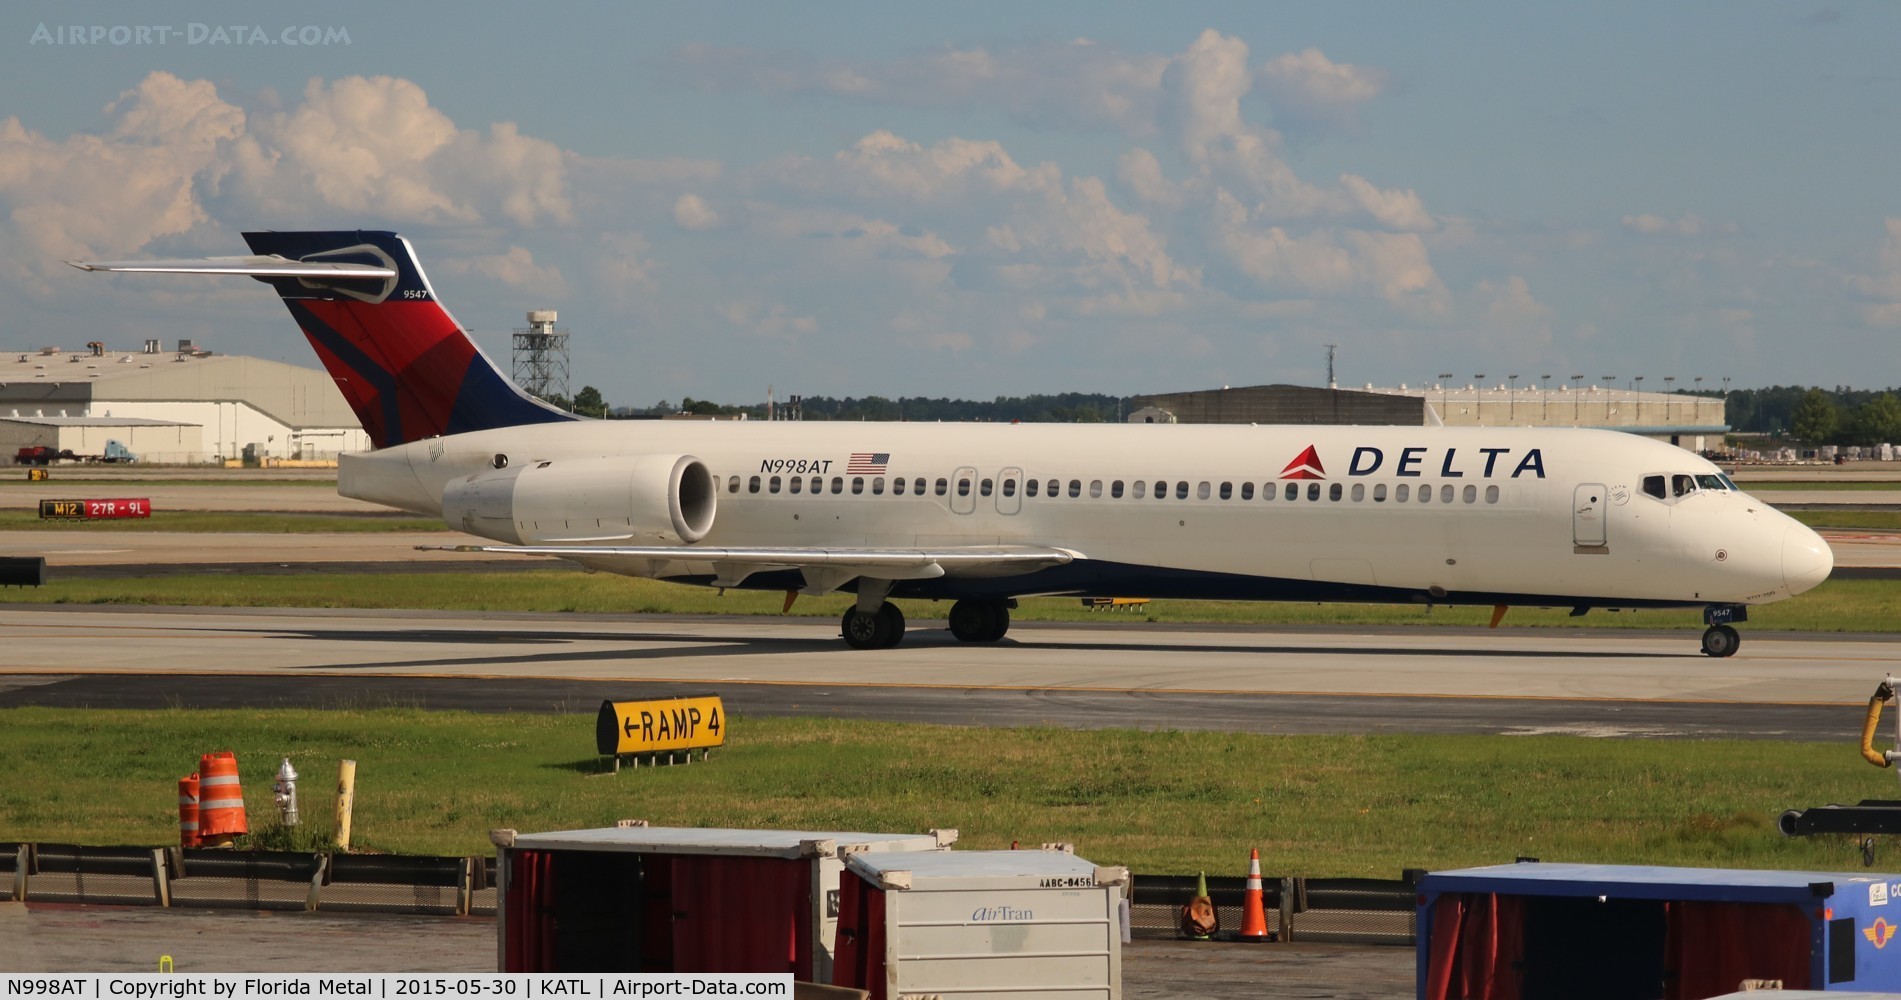 N998AT, 2002 Boeing 717-200 C/N 55142, Delta at ATL